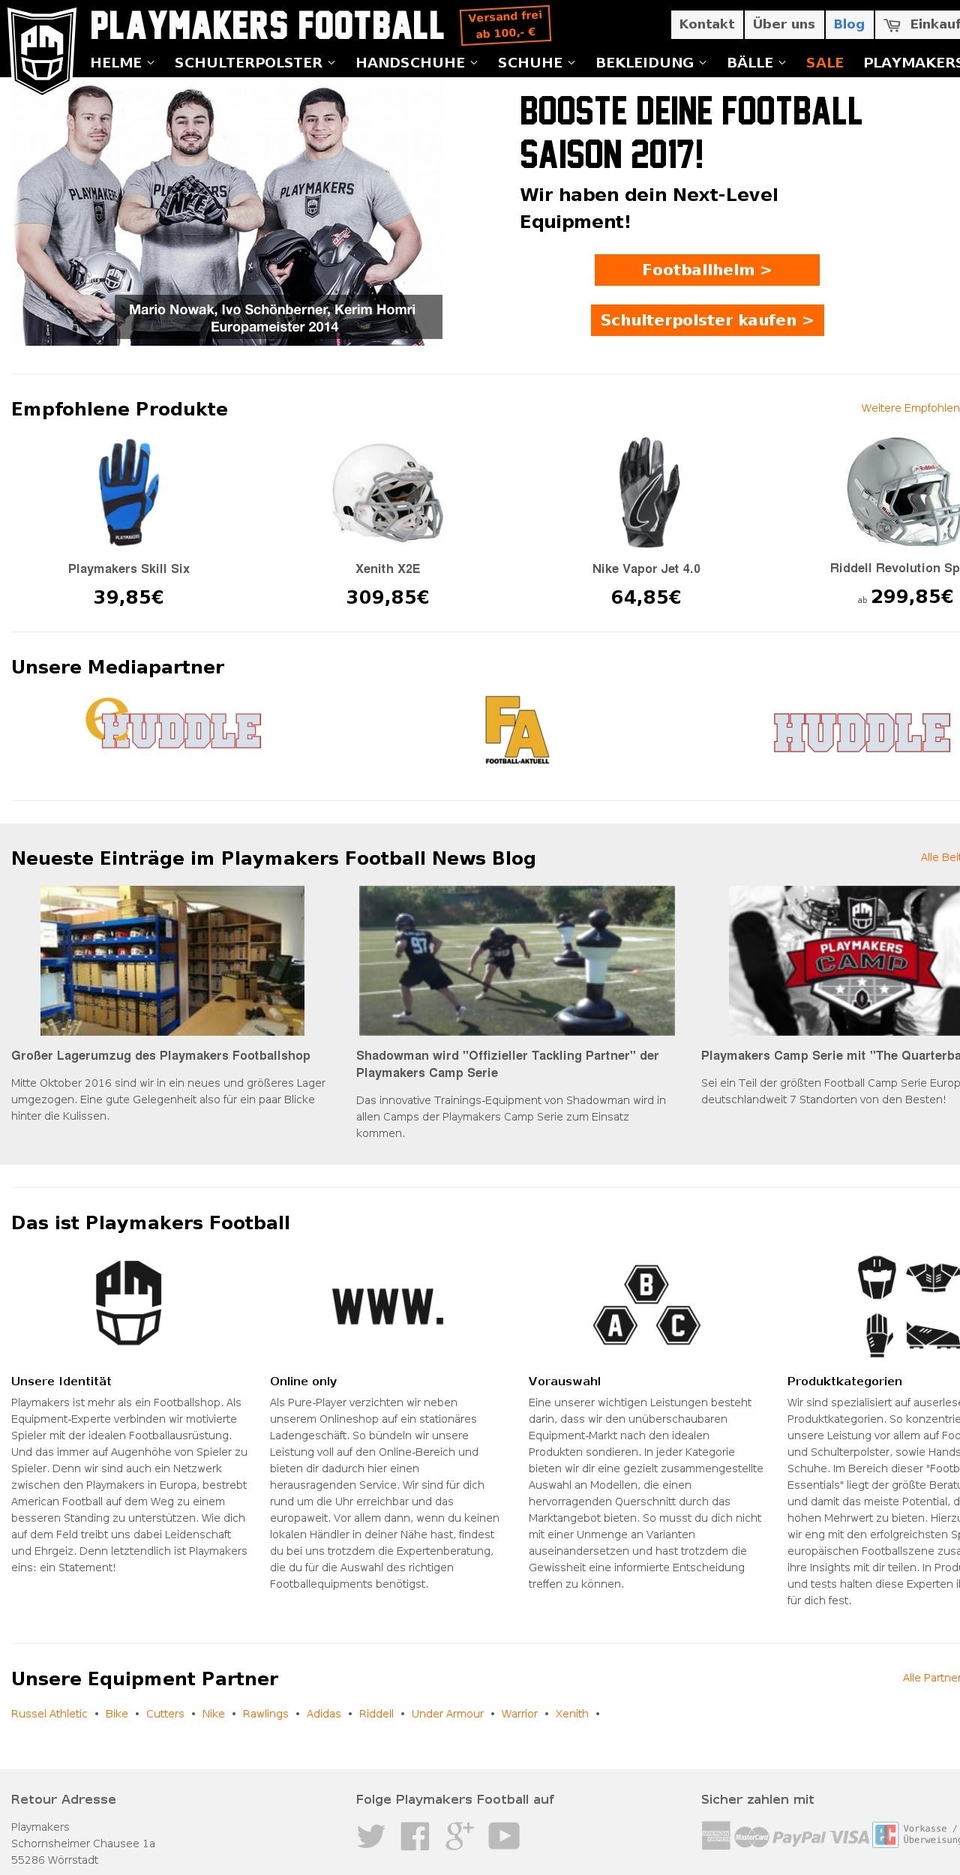 playmakersfootball.net shopify website screenshot